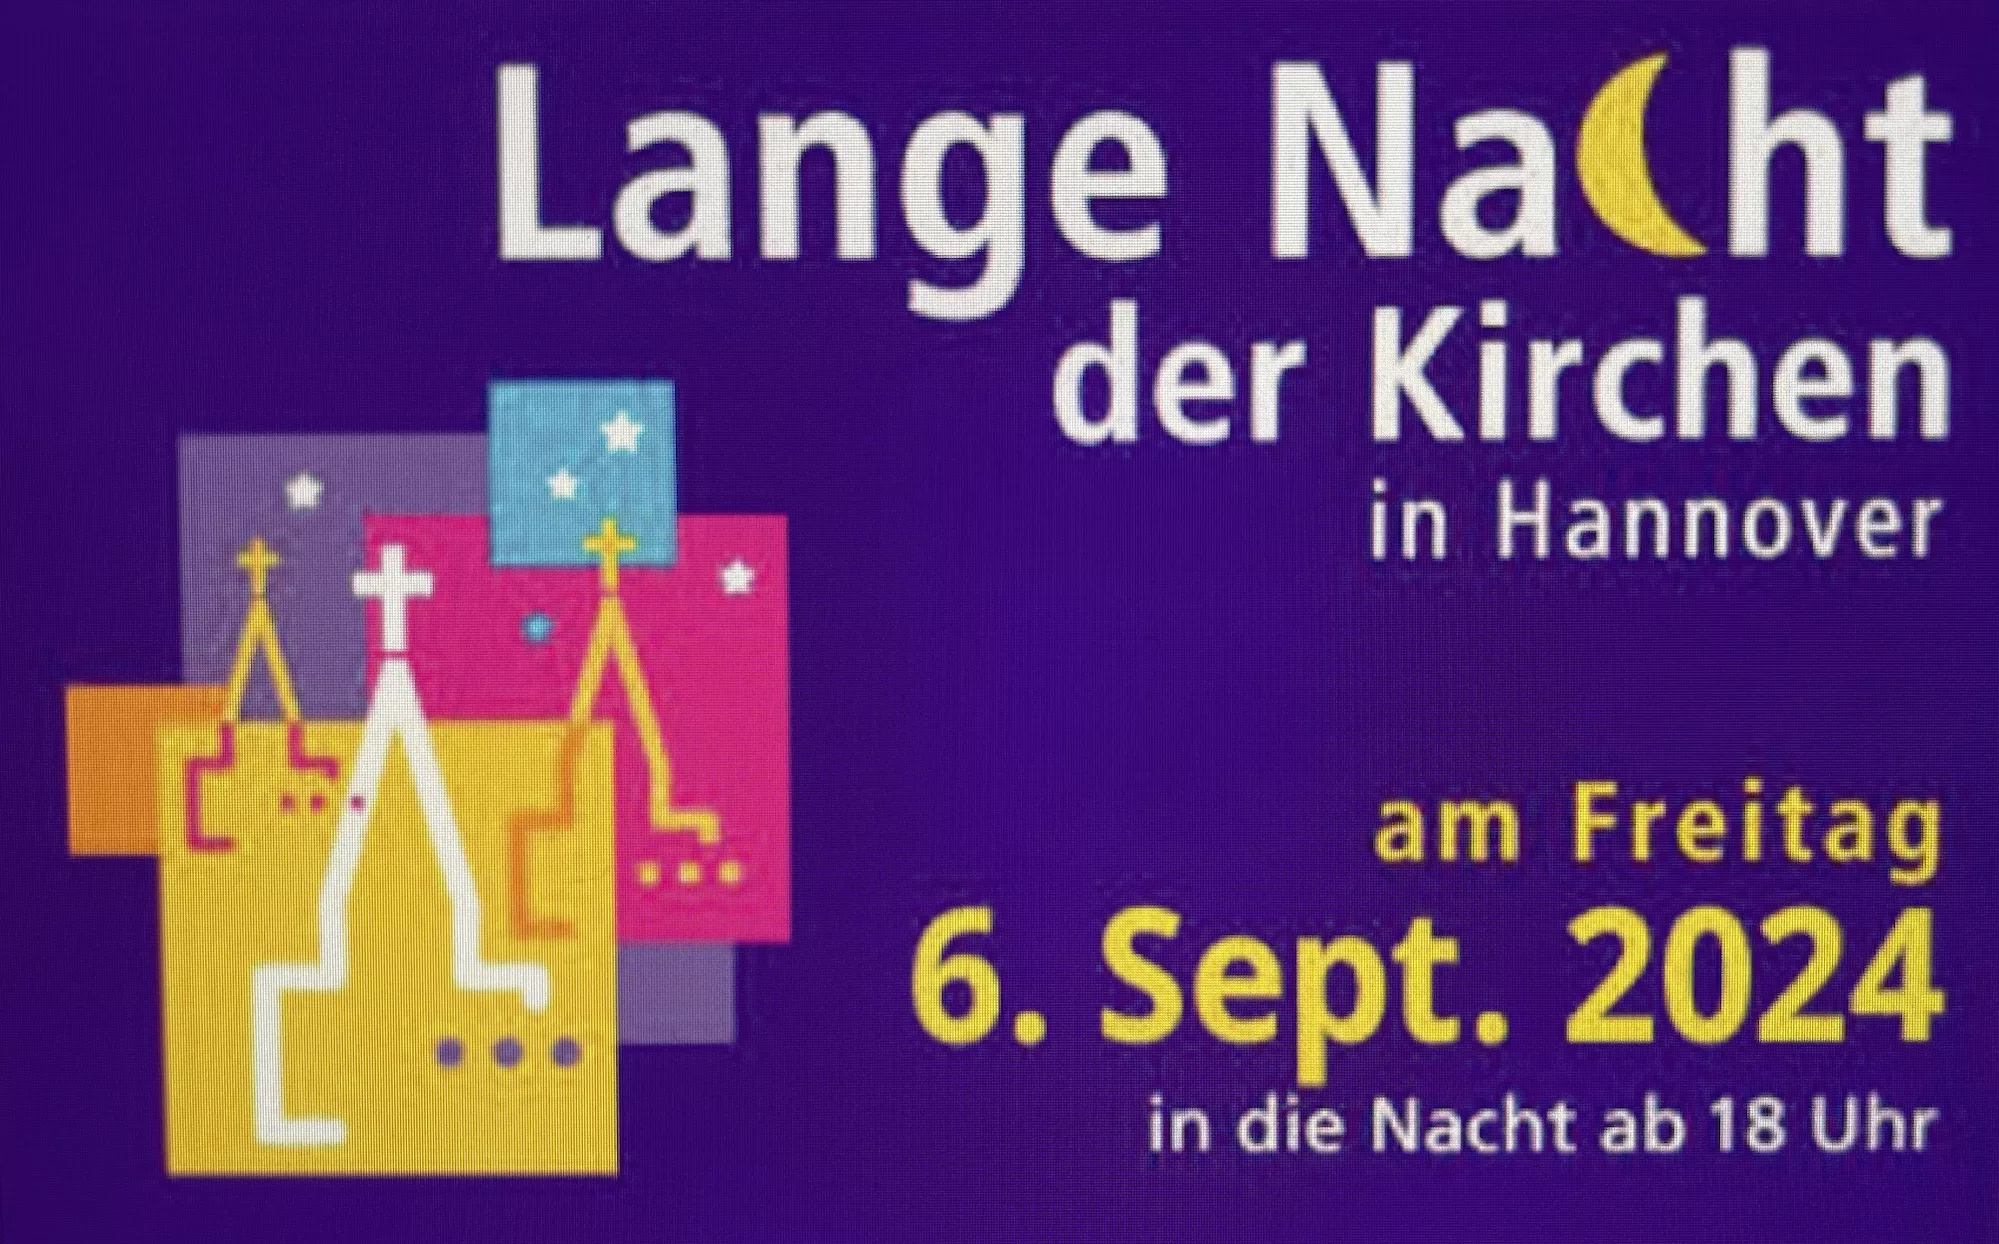 Lange Nacht der Kirchen in Hannover am Freitag 6. Sept. 2024 in die Nacht ab 18 Uhr